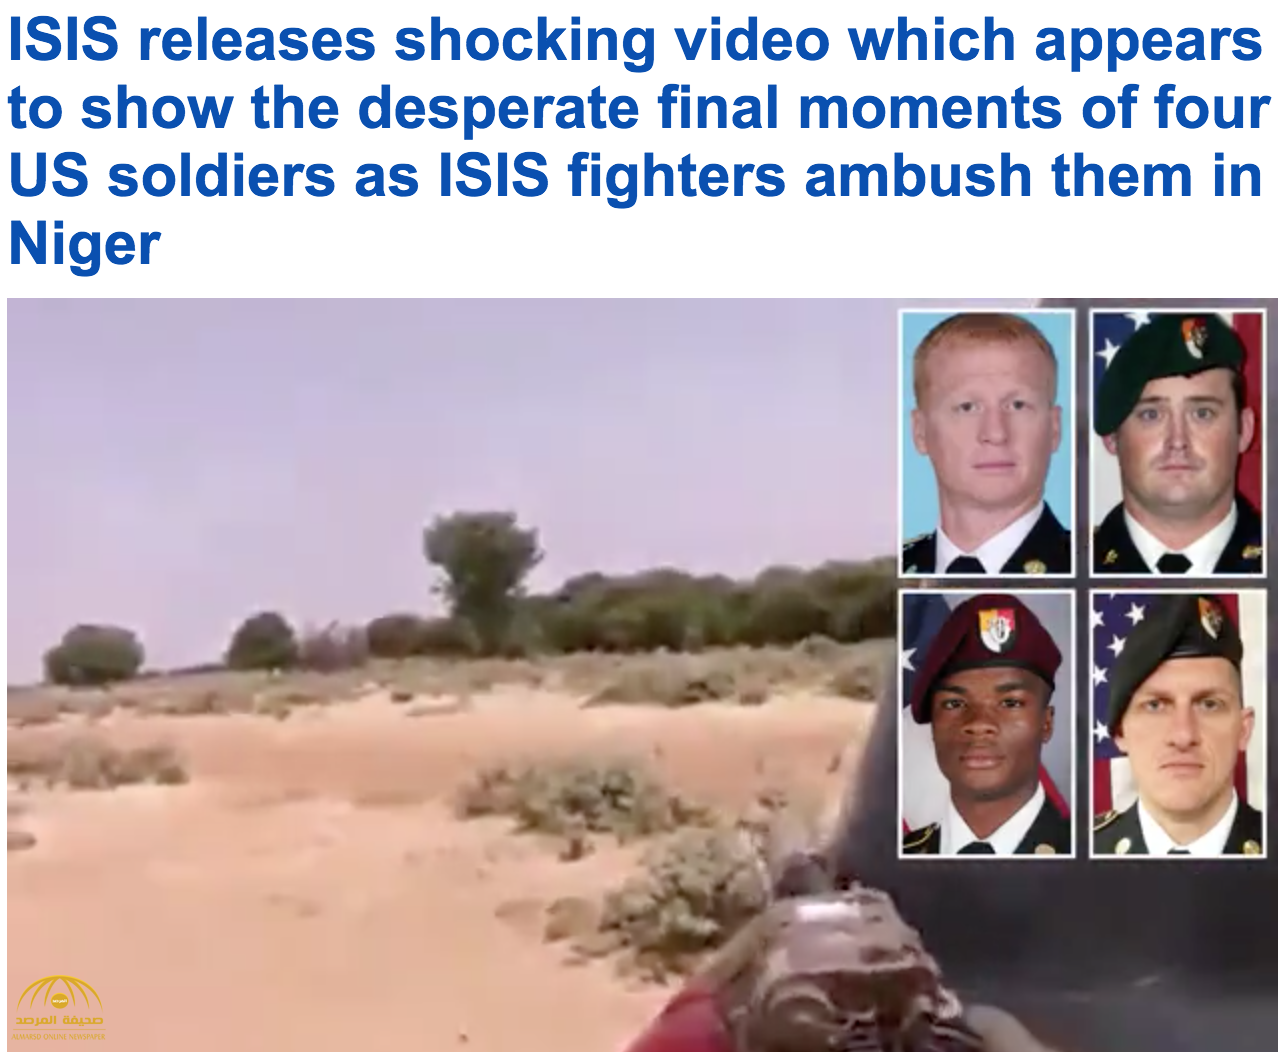 داعش ينشر فيديو لقتل 4 جنود أميركيين في النيجر